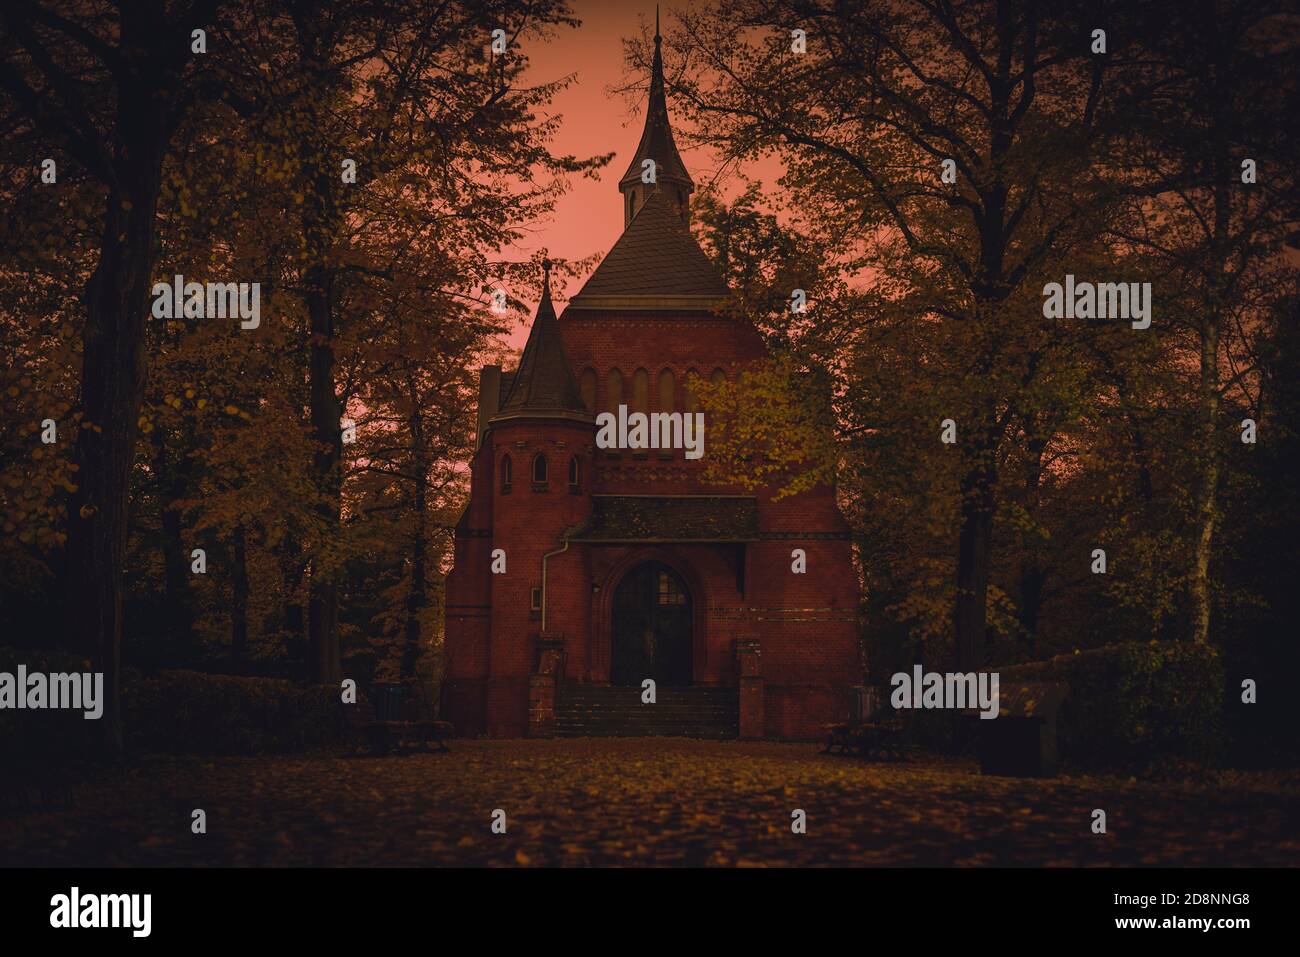 Friedhofskapelle bei Nacht, Herbstbäume, gruselige Kapelle auf einem Friedhof bei Nacht, abstrakte Farben, bunt, kunstvoll Stockfoto